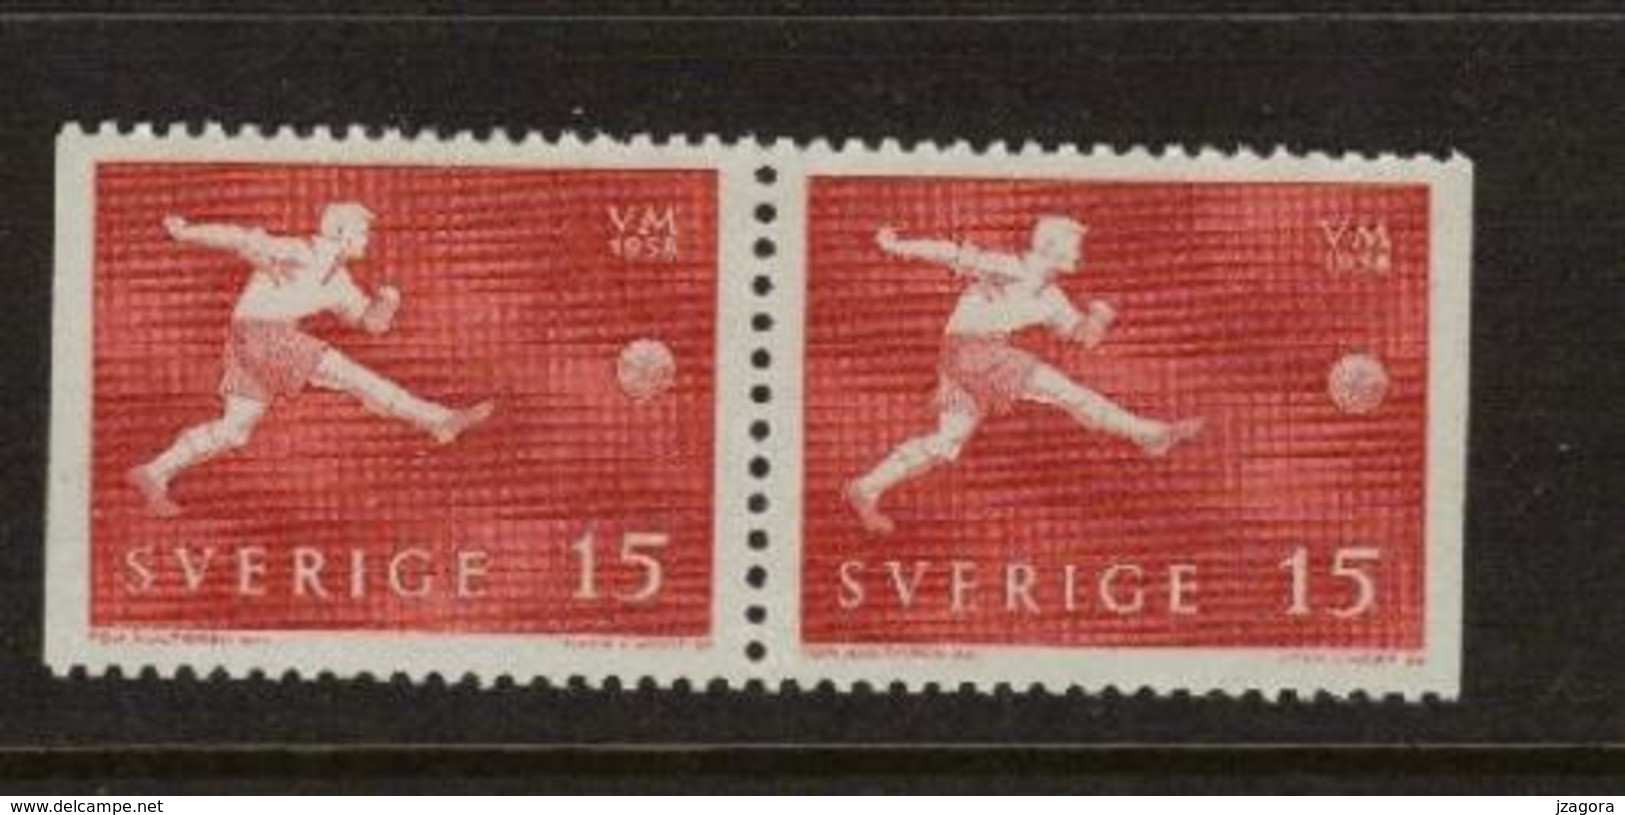 SOCCER FOOTBALL WORLD CHAMPIONSHIP - MUNDIAL 1958 - SWEDEN SCHWEDEN SUEDE MI 438 Dl\Dr MNH - 1958 – Suecia